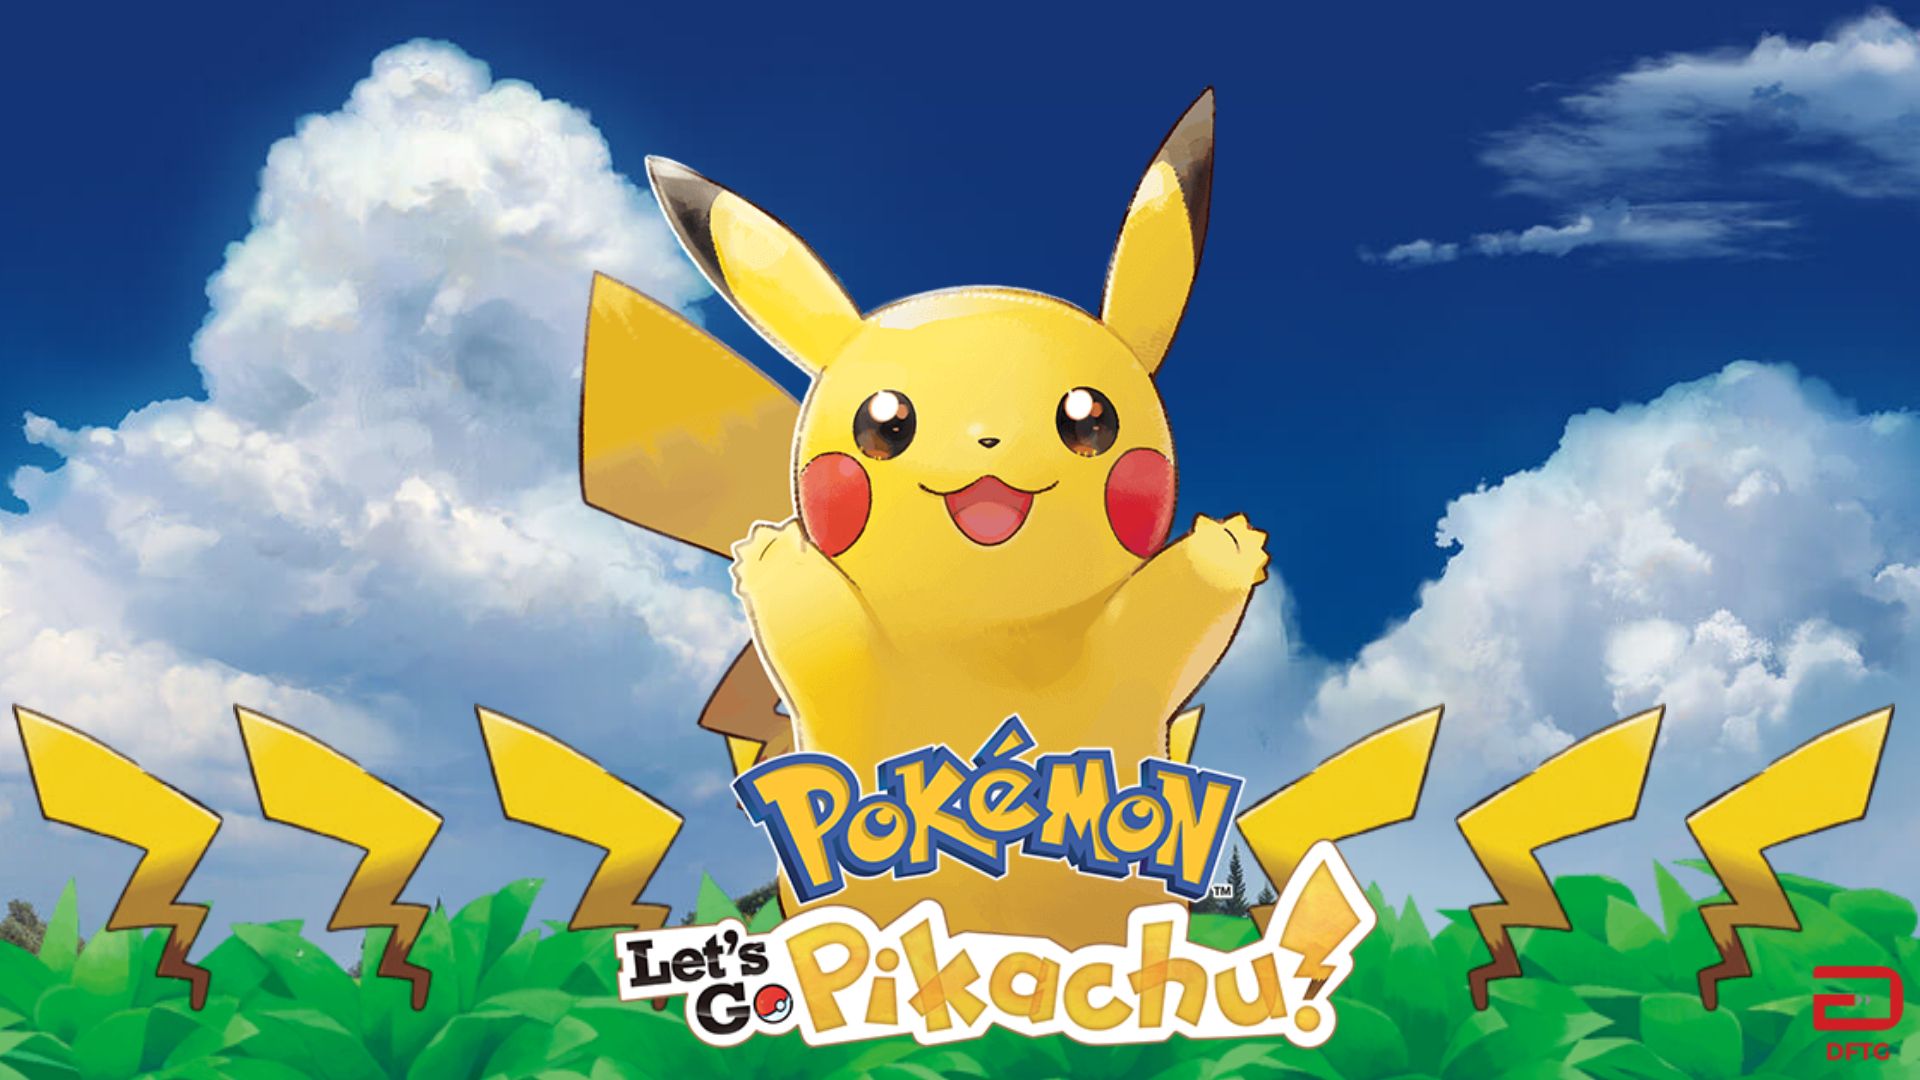 Let’s Play Pokémon: Let’s Go, Pikachu!